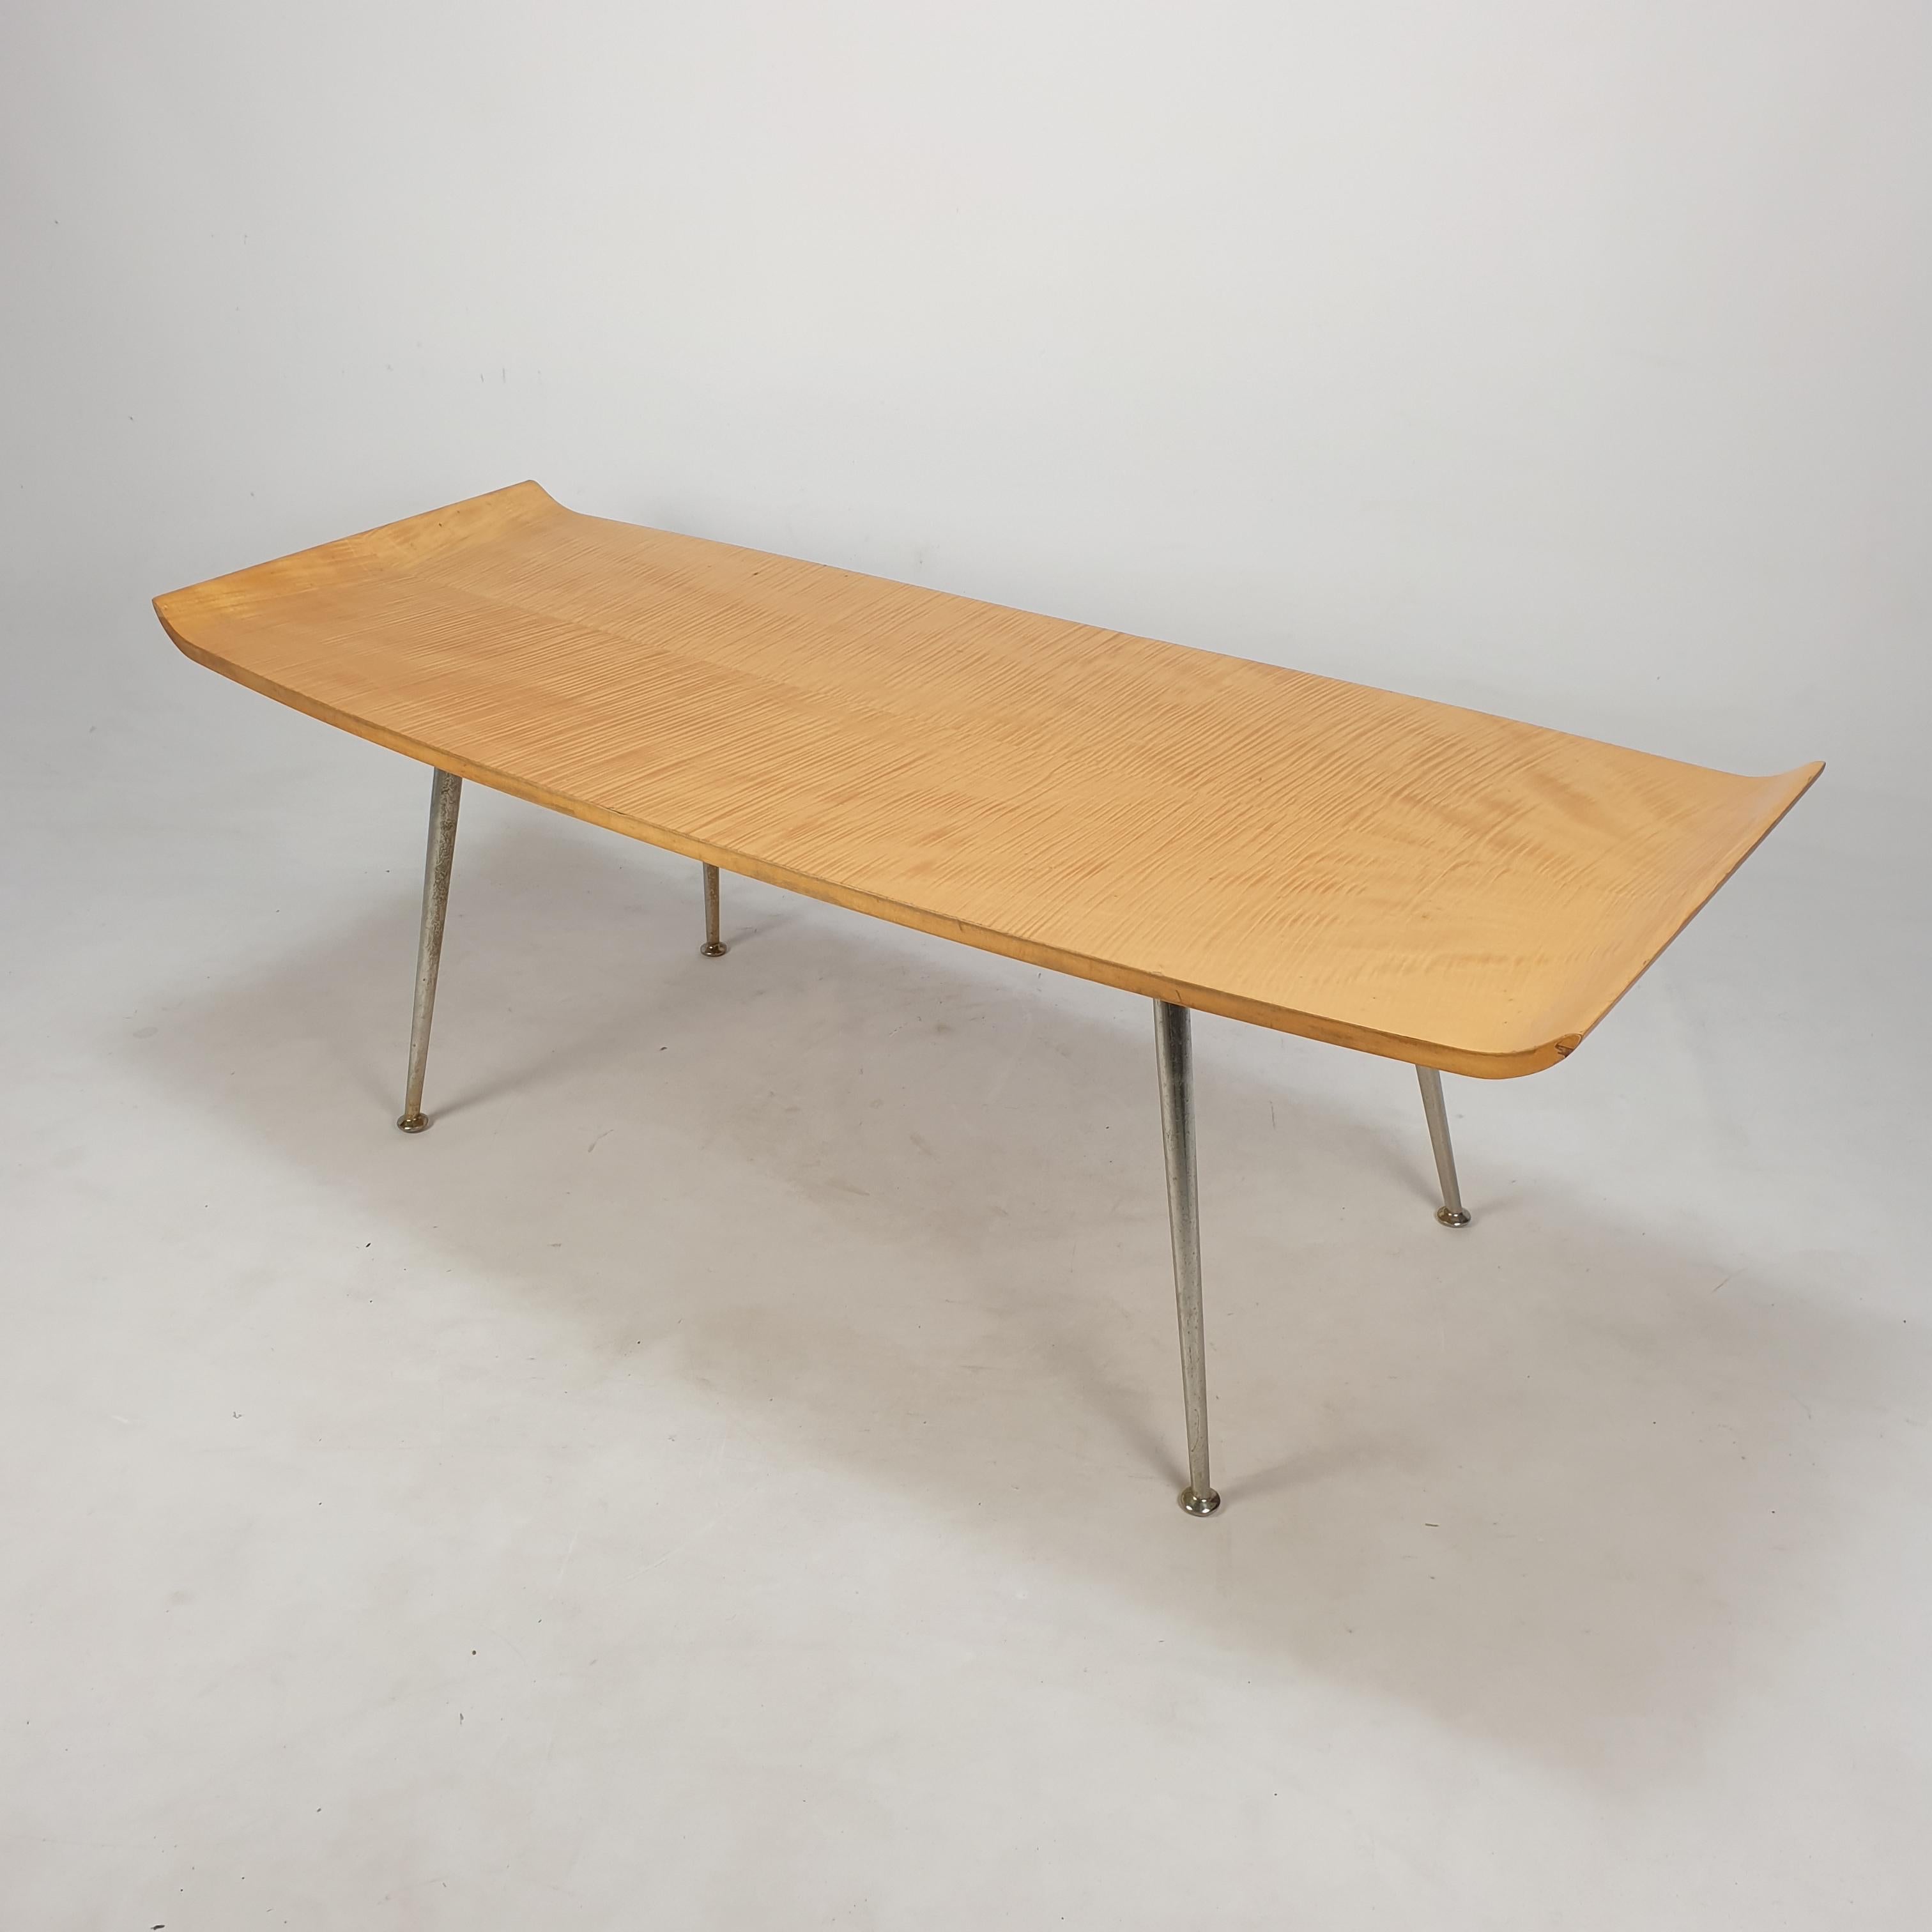 Très belle table basse ou table d'appoint italienne fabriquée dans les années 50. 

Plaque en bois laqué avec une élégante finition ronde sur les deux côtés. 

Pieds ronds en laiton.